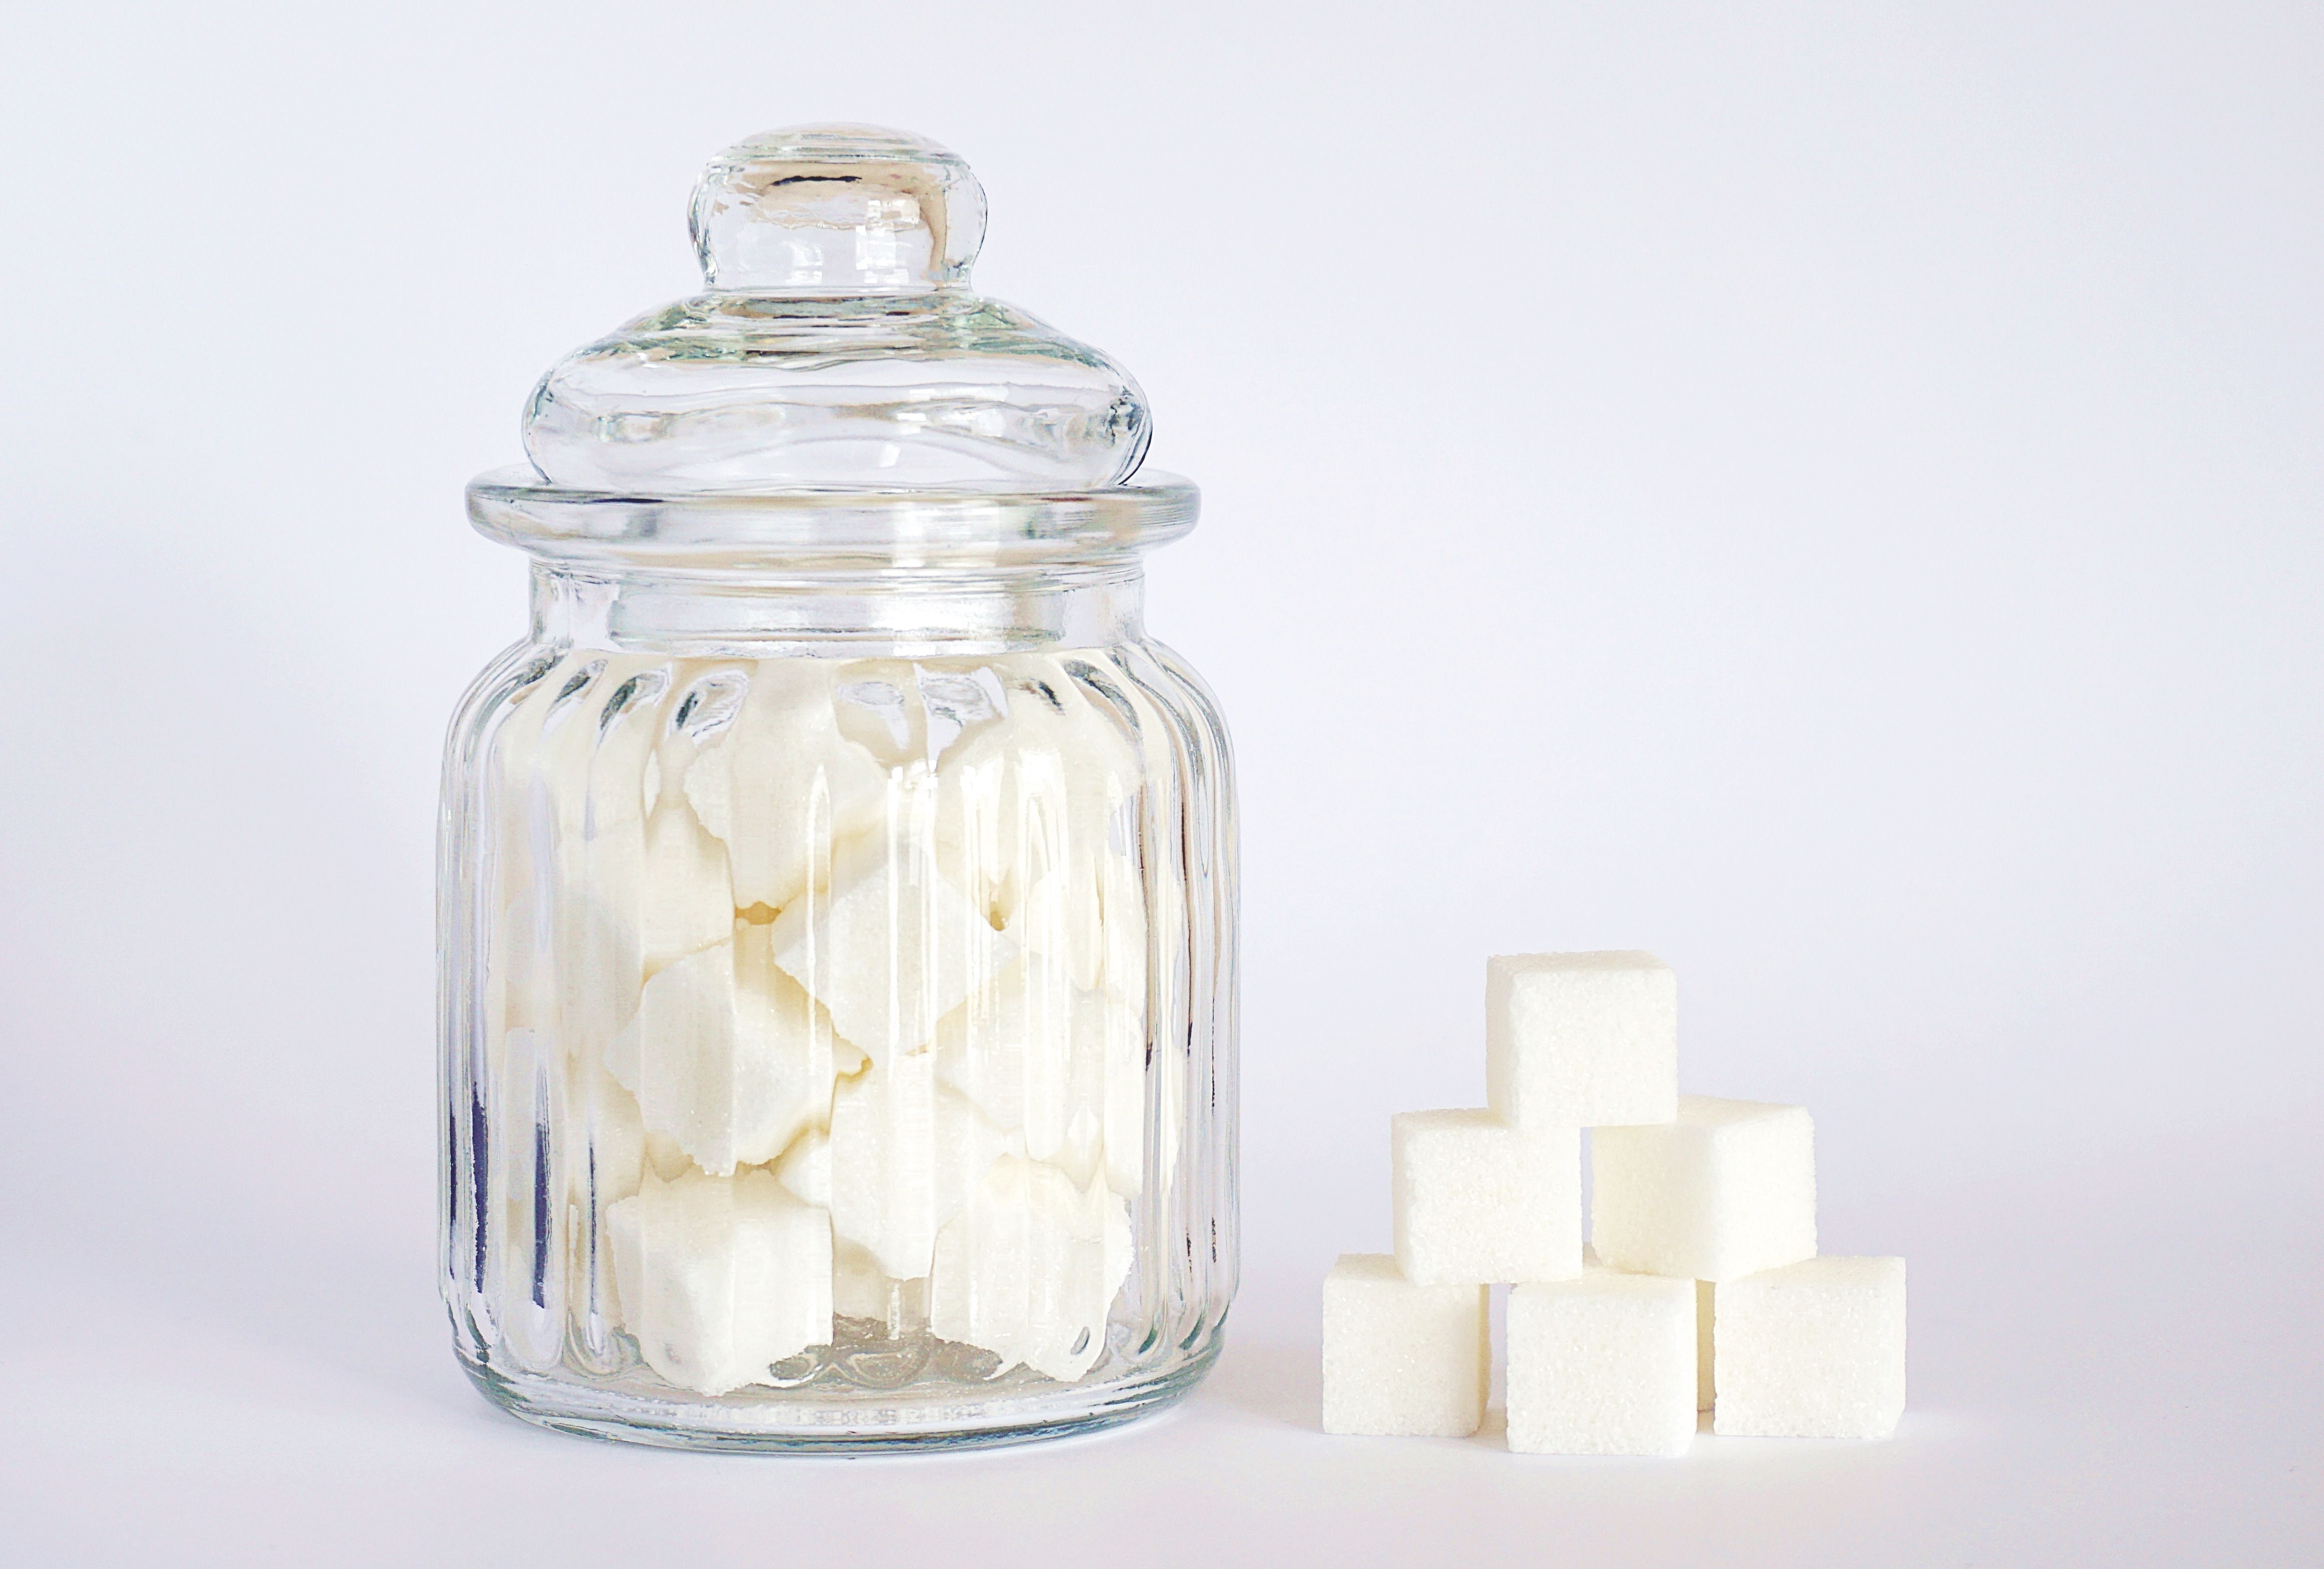 Вчені виявили, що нестача вітамінів і мінералів у раціоні людини пов'язана з надмірною кількістю вживаного цукру. Чим більше цукру ми їмо, тим менше нутрієнтів отримуємо.